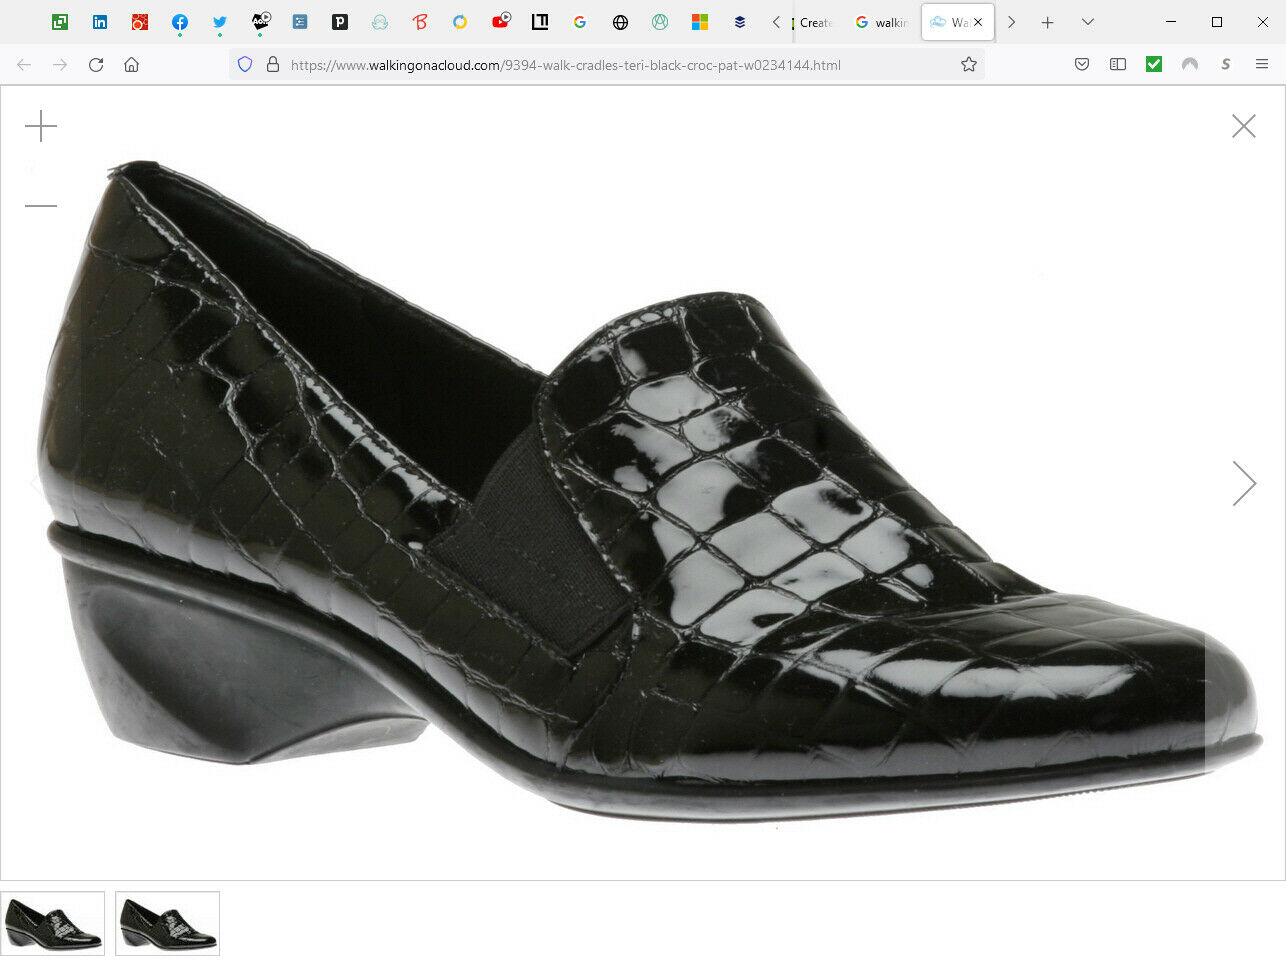 Black Patent Croc-Embossed Walking Cradles Teri Shoes 9.5M MSRP $145